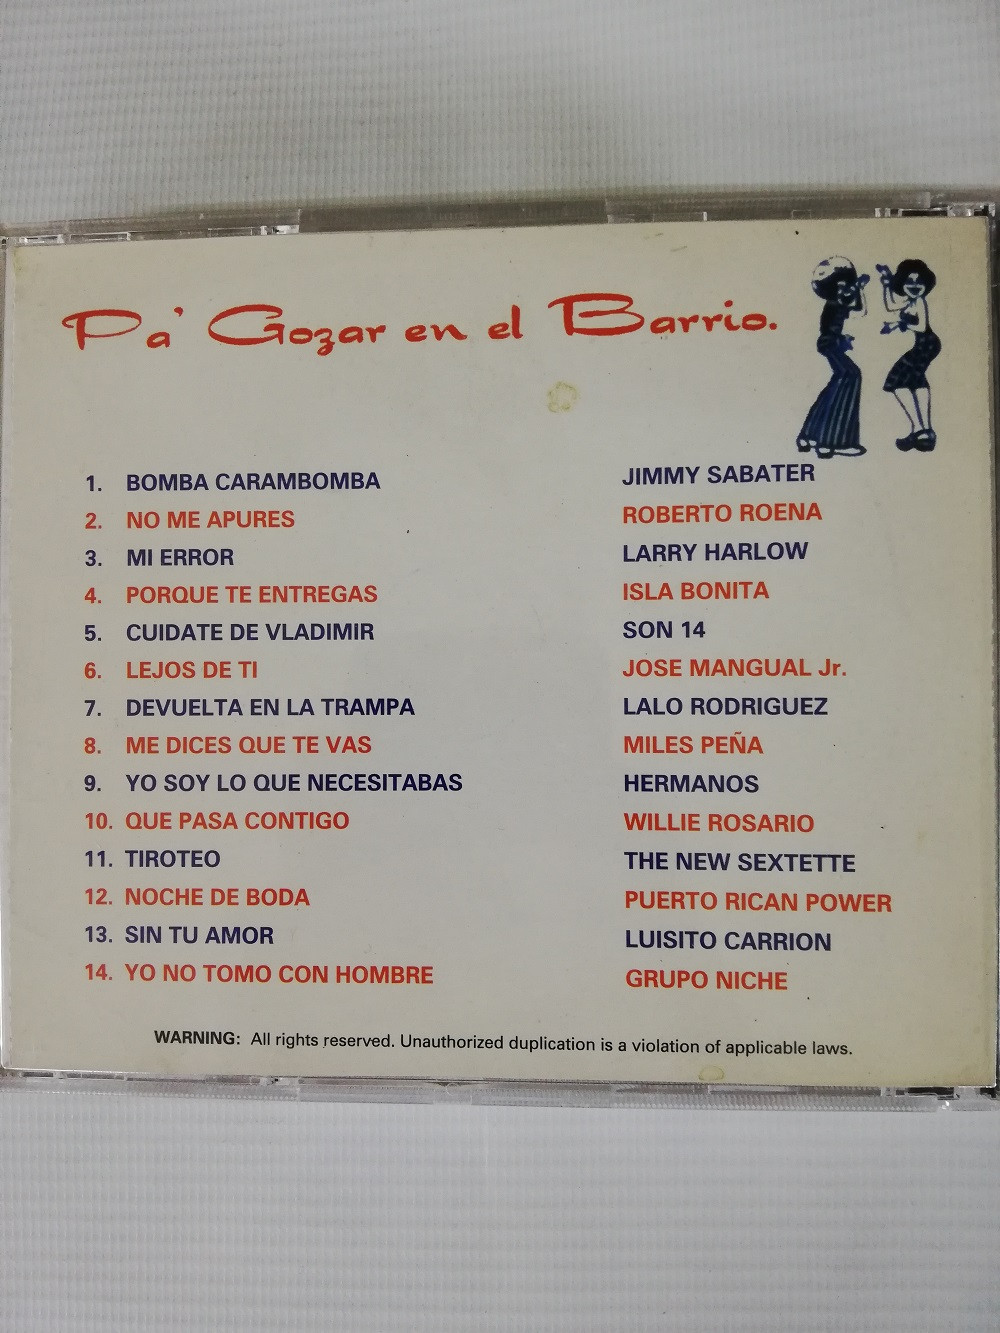 Imagen CD PA´ GOZAR EN EL BARRIO - PA´ GOZAR EN EL BARRIO VOL. 1 2